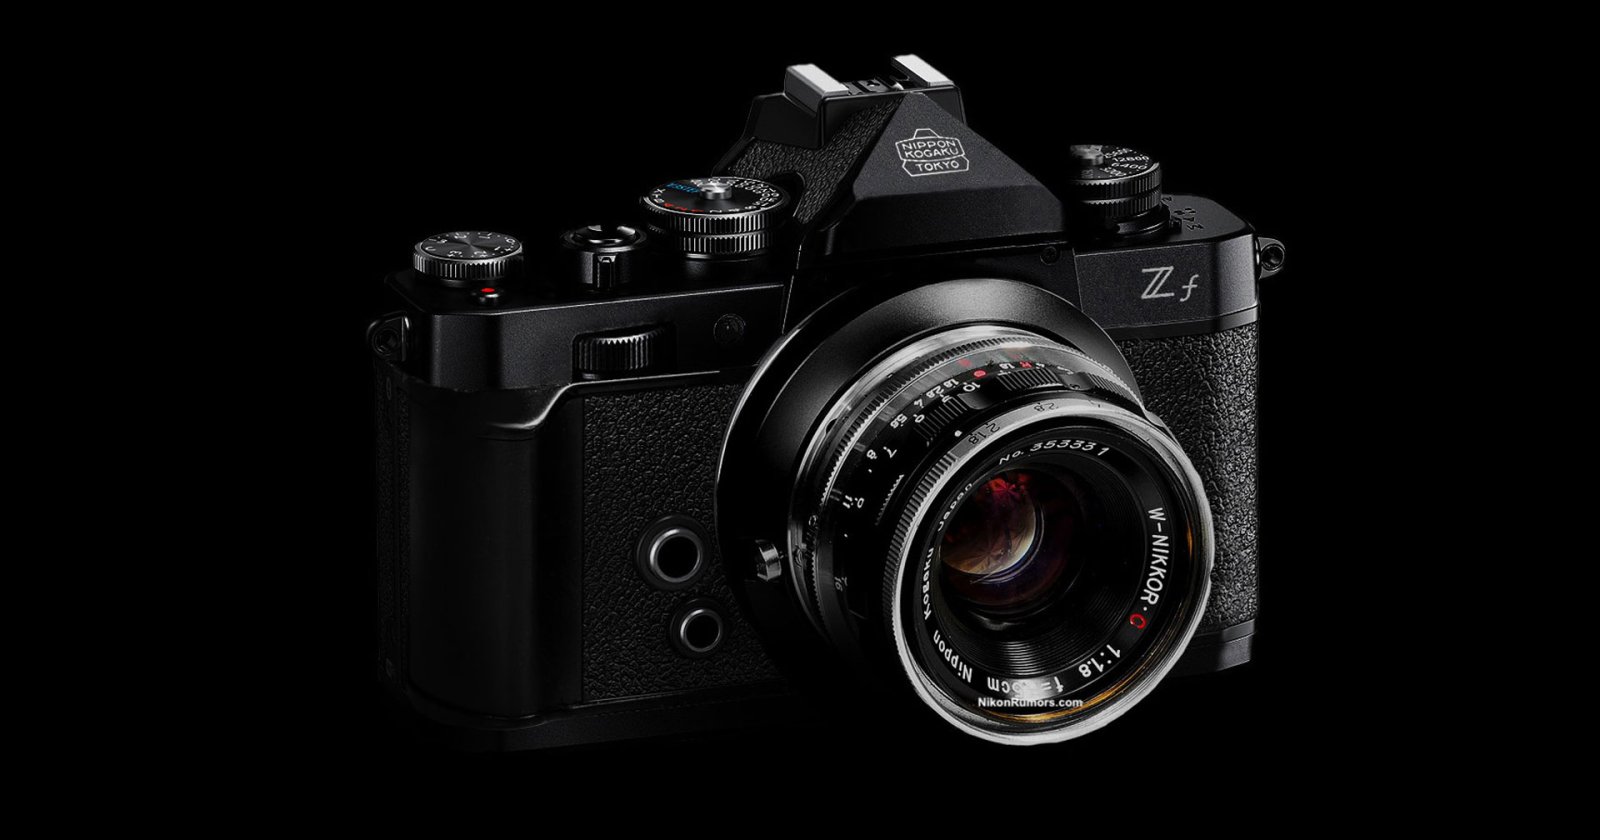 ลือ Nikon Zf อาจมาพร้อมเซนเซอร์ Full frame 45.7MP จาก Z7II ในราคาบอดี้ประมาณ 68,000 บาท